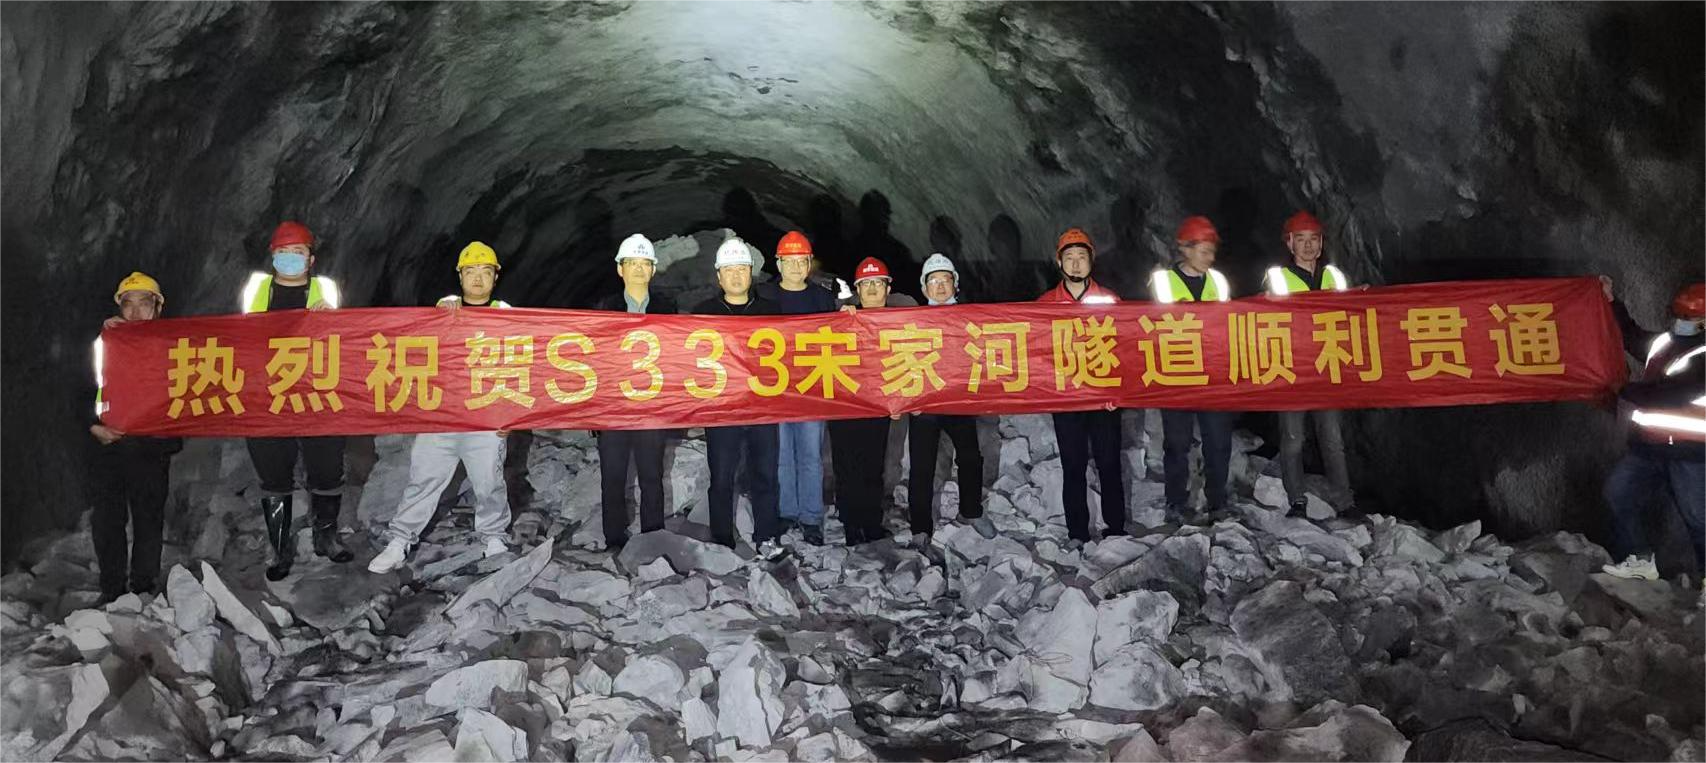 热烈祝贺S333宋家河段公路改建工程长隧道顺利贯通